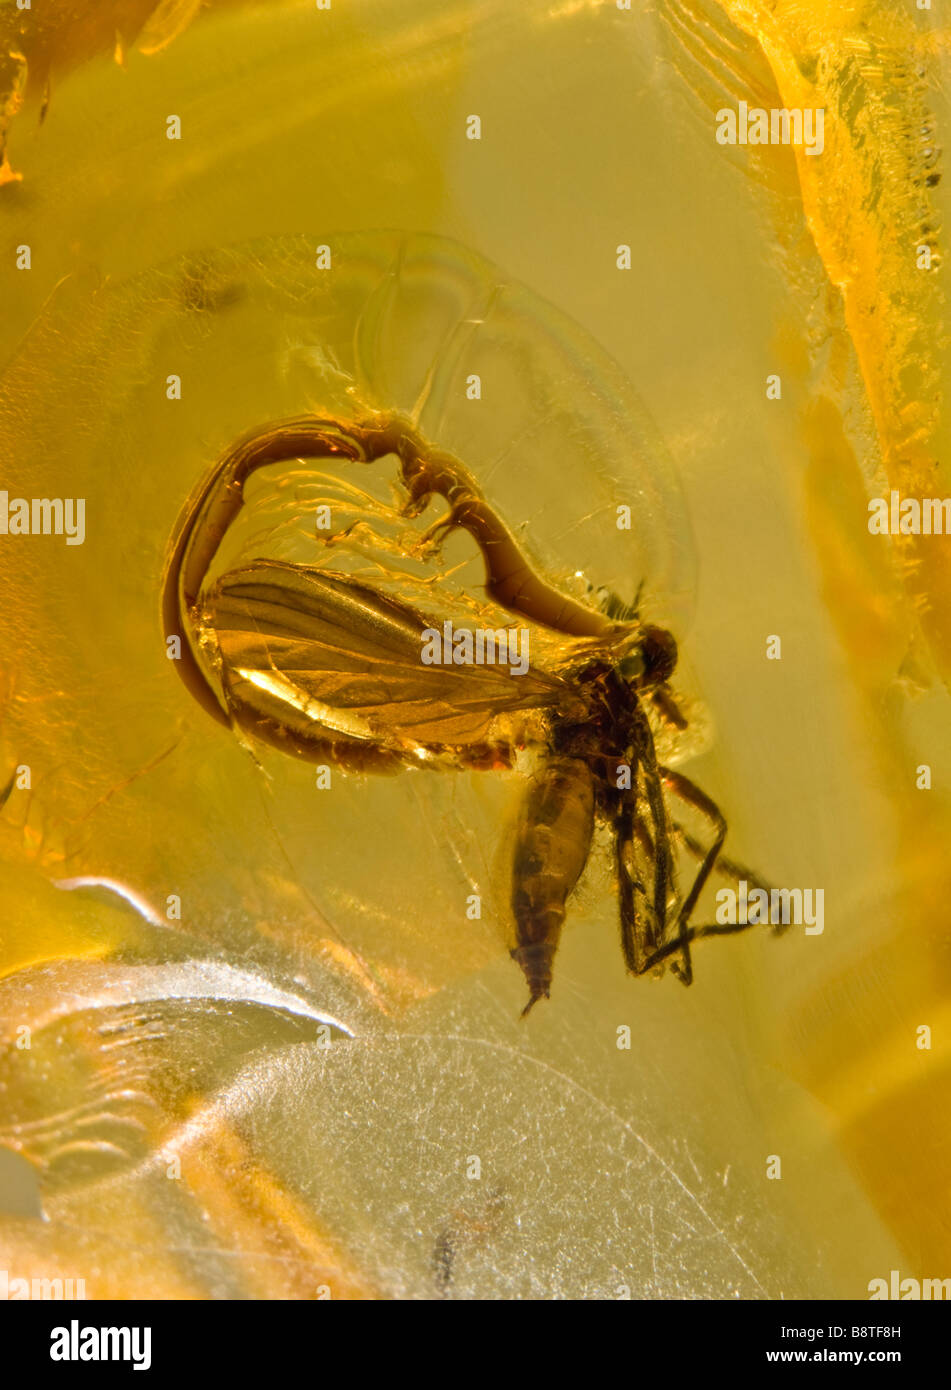 Fly préhistoriques conservés dans l'ambre baltique lituanienne, avec bulle d'air autour des ailes Banque D'Images